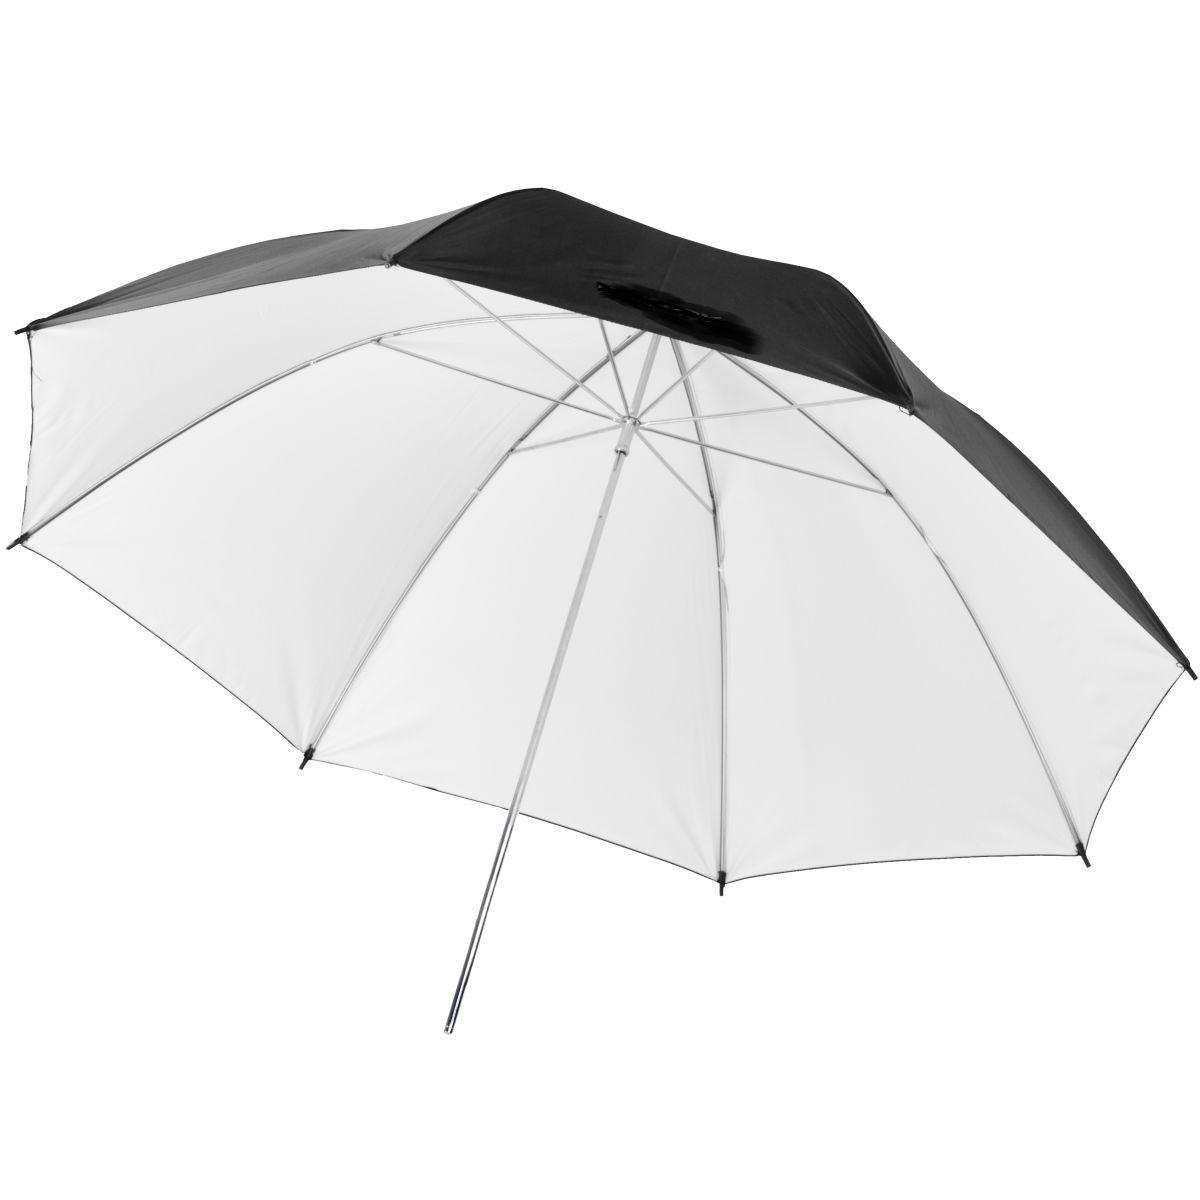 Studiový fotografický odrazový bílý deštník, 83cm 